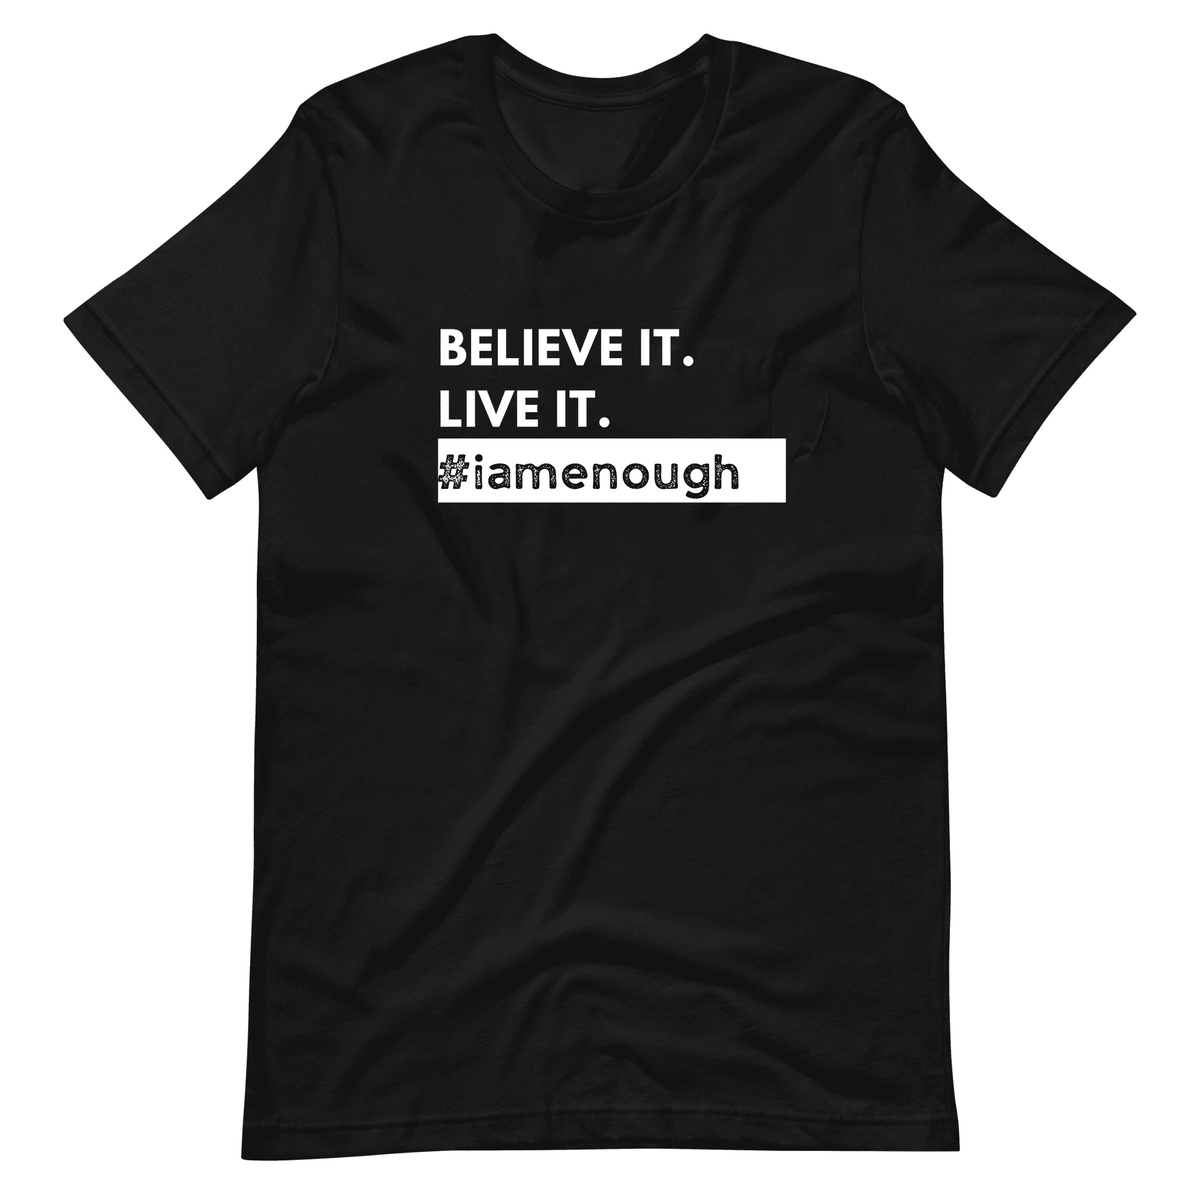 #iamenough BELIEVE IT. LIVE IT. - Motivational Graphic T-Shirt for Men | I Am Enough Collection